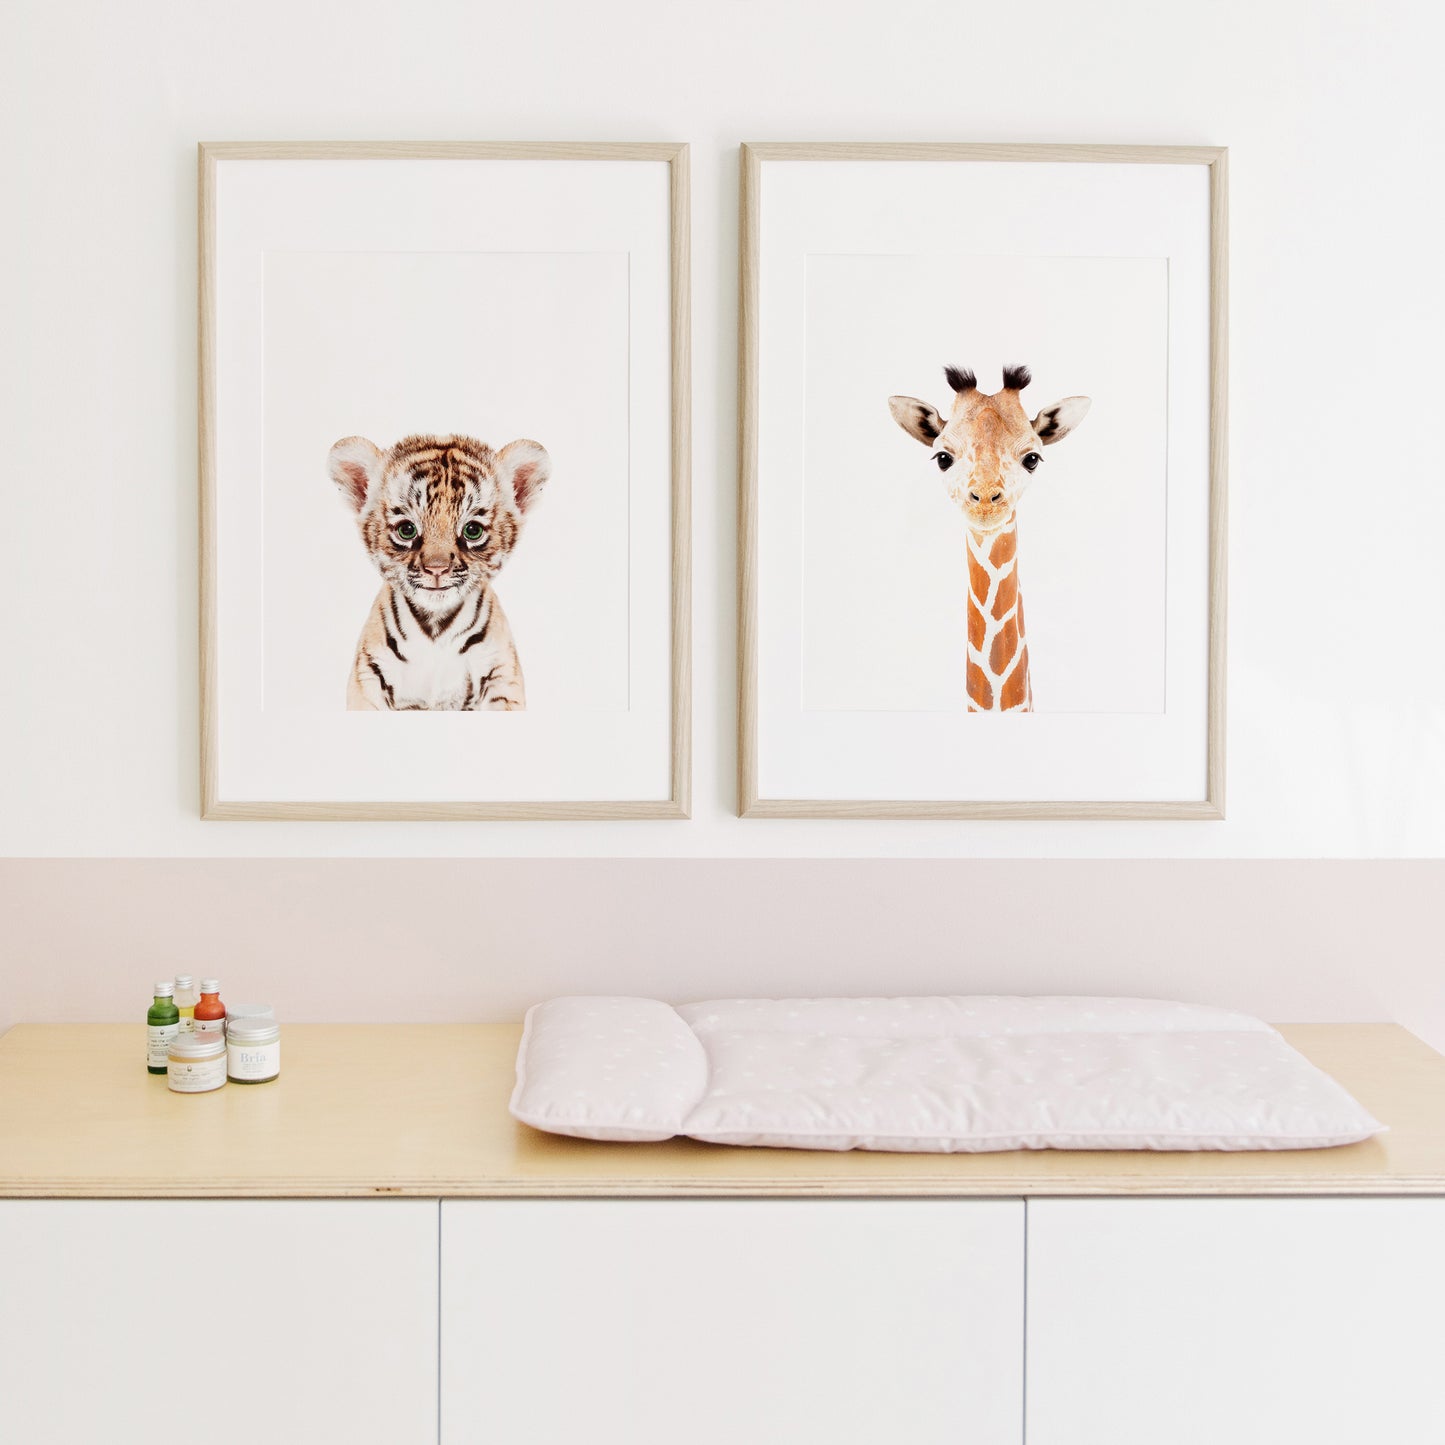 Baby Tiger Wall Art Print